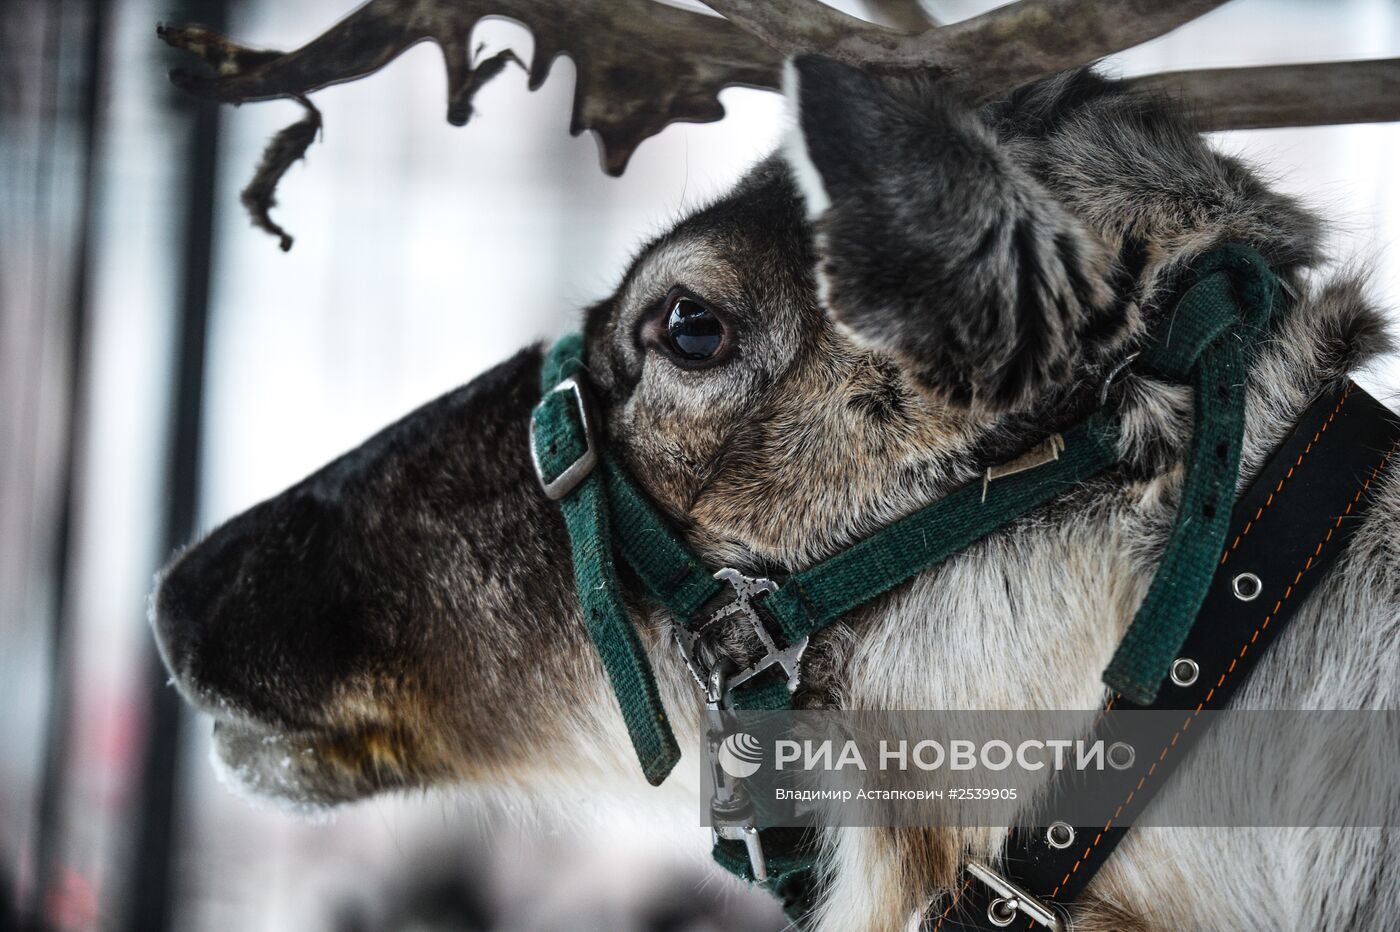 Северный олень прибыл на площадку фестиваля "Снежная королева" в центре Москвы